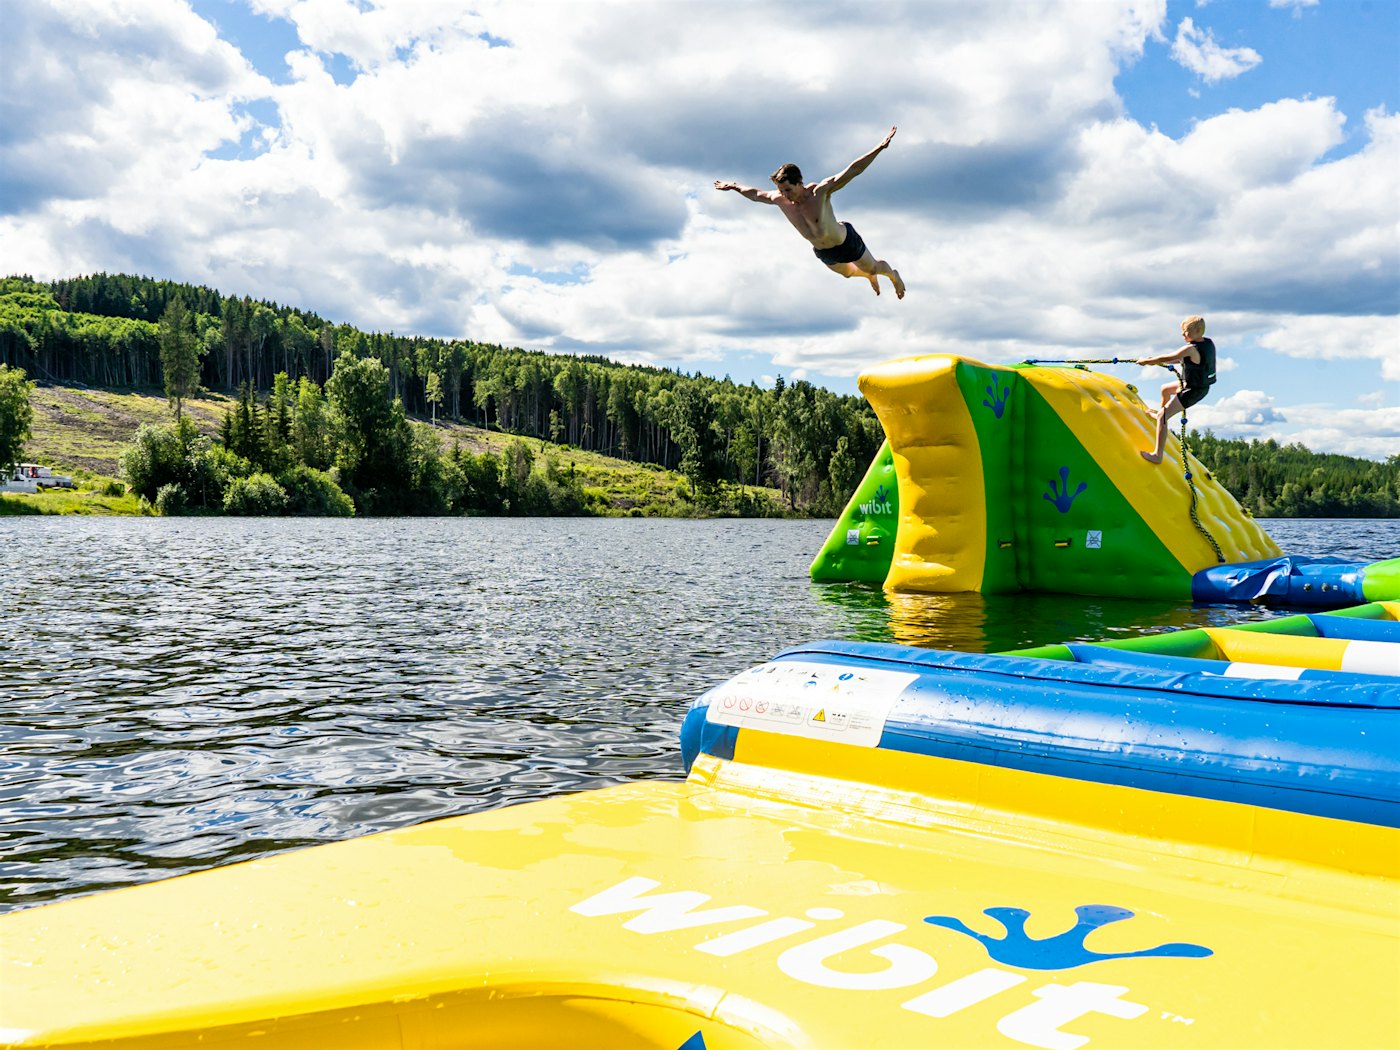 Kinder spielen und vergnügen sich im schwimmenden Wasserpark in Mjøsa, ein Jugendlicher springt von einem Turm. Foto